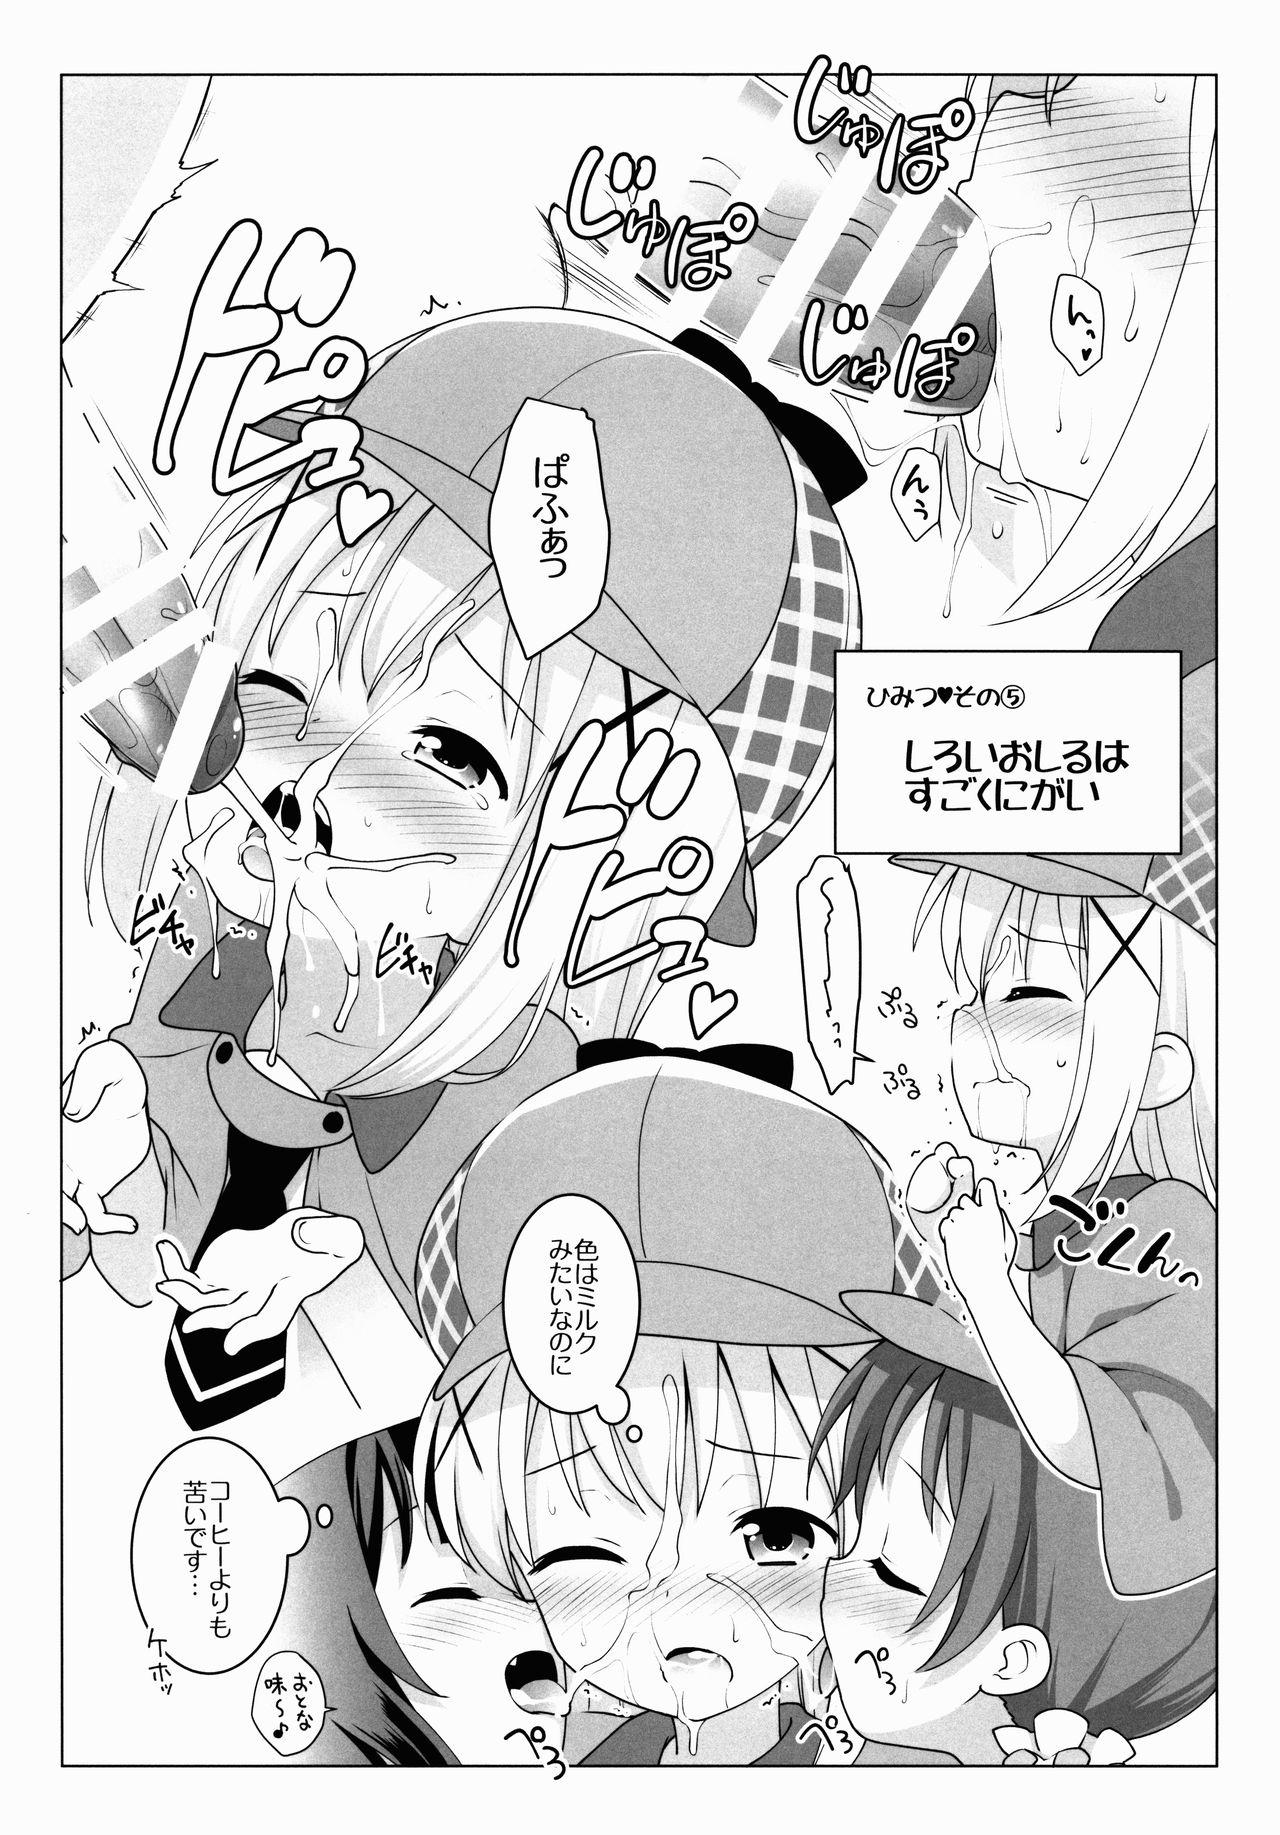 Jockstrap Chimahame Tanteidan Ochinchin Chousa Nisshi - Gochuumon wa usagi desu ka Hard Core Sex - Page 4